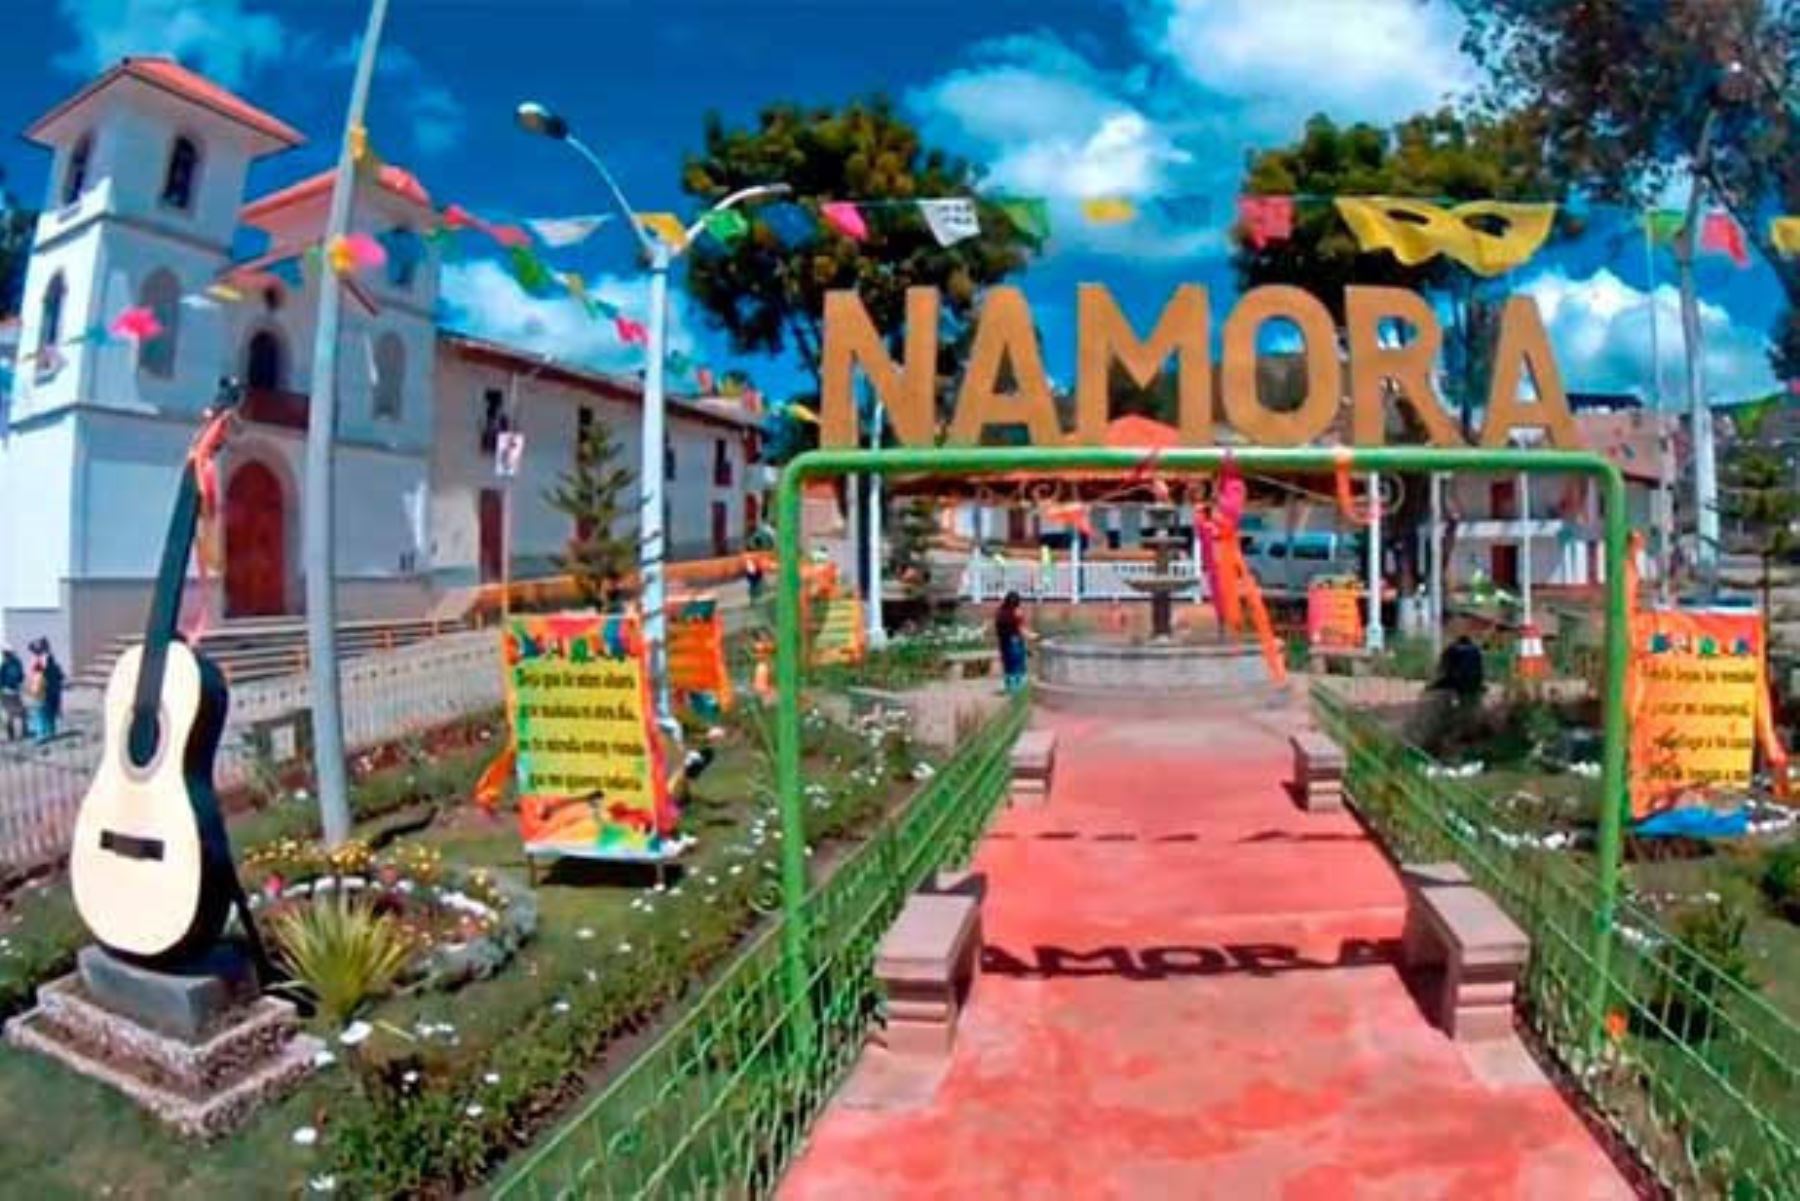 El distrito de Namora está ubicado en la provincia de Cajamarca. Foto: ANDINA/Difusión